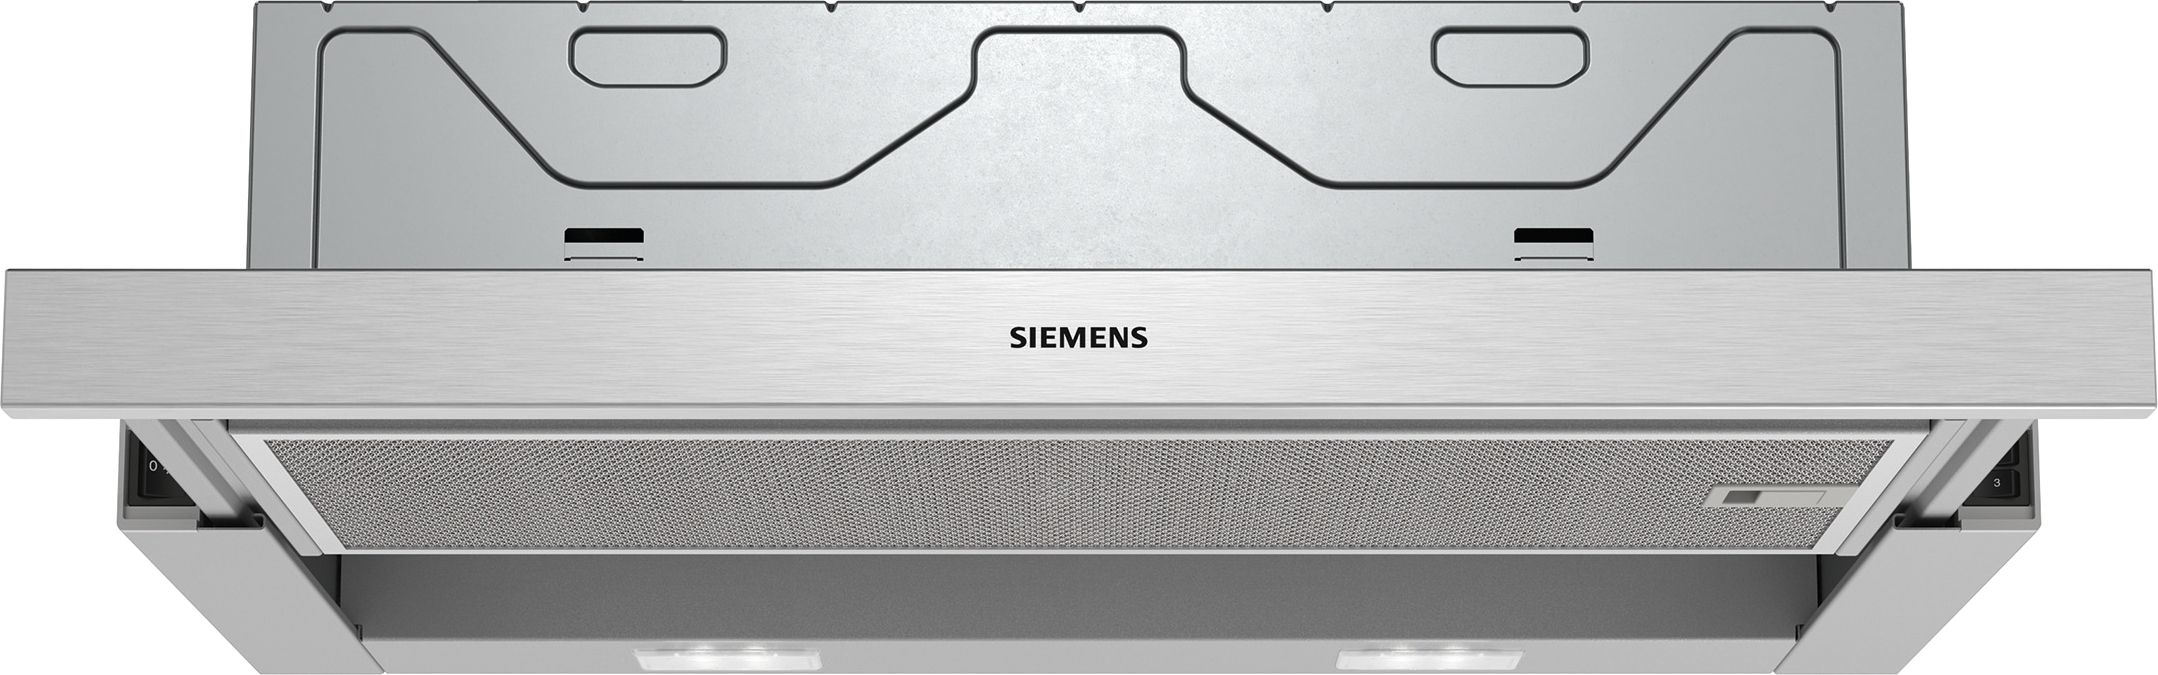 Siemens LI64MB521